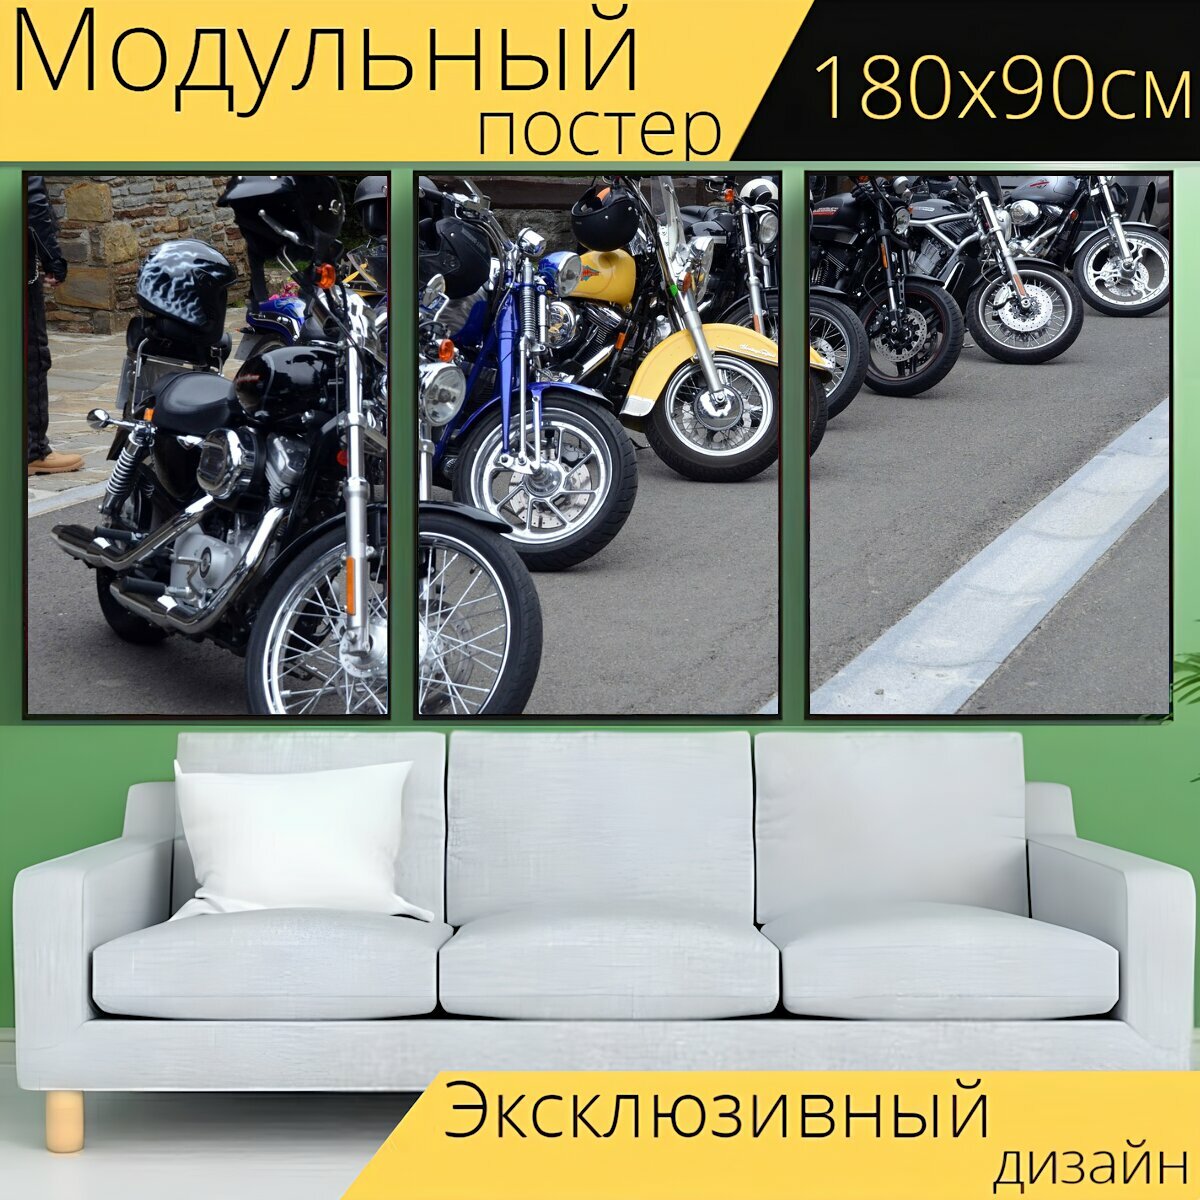 Модульный постер "Мотоцикл, мото, шоссе" 180 x 90 см. для интерьера